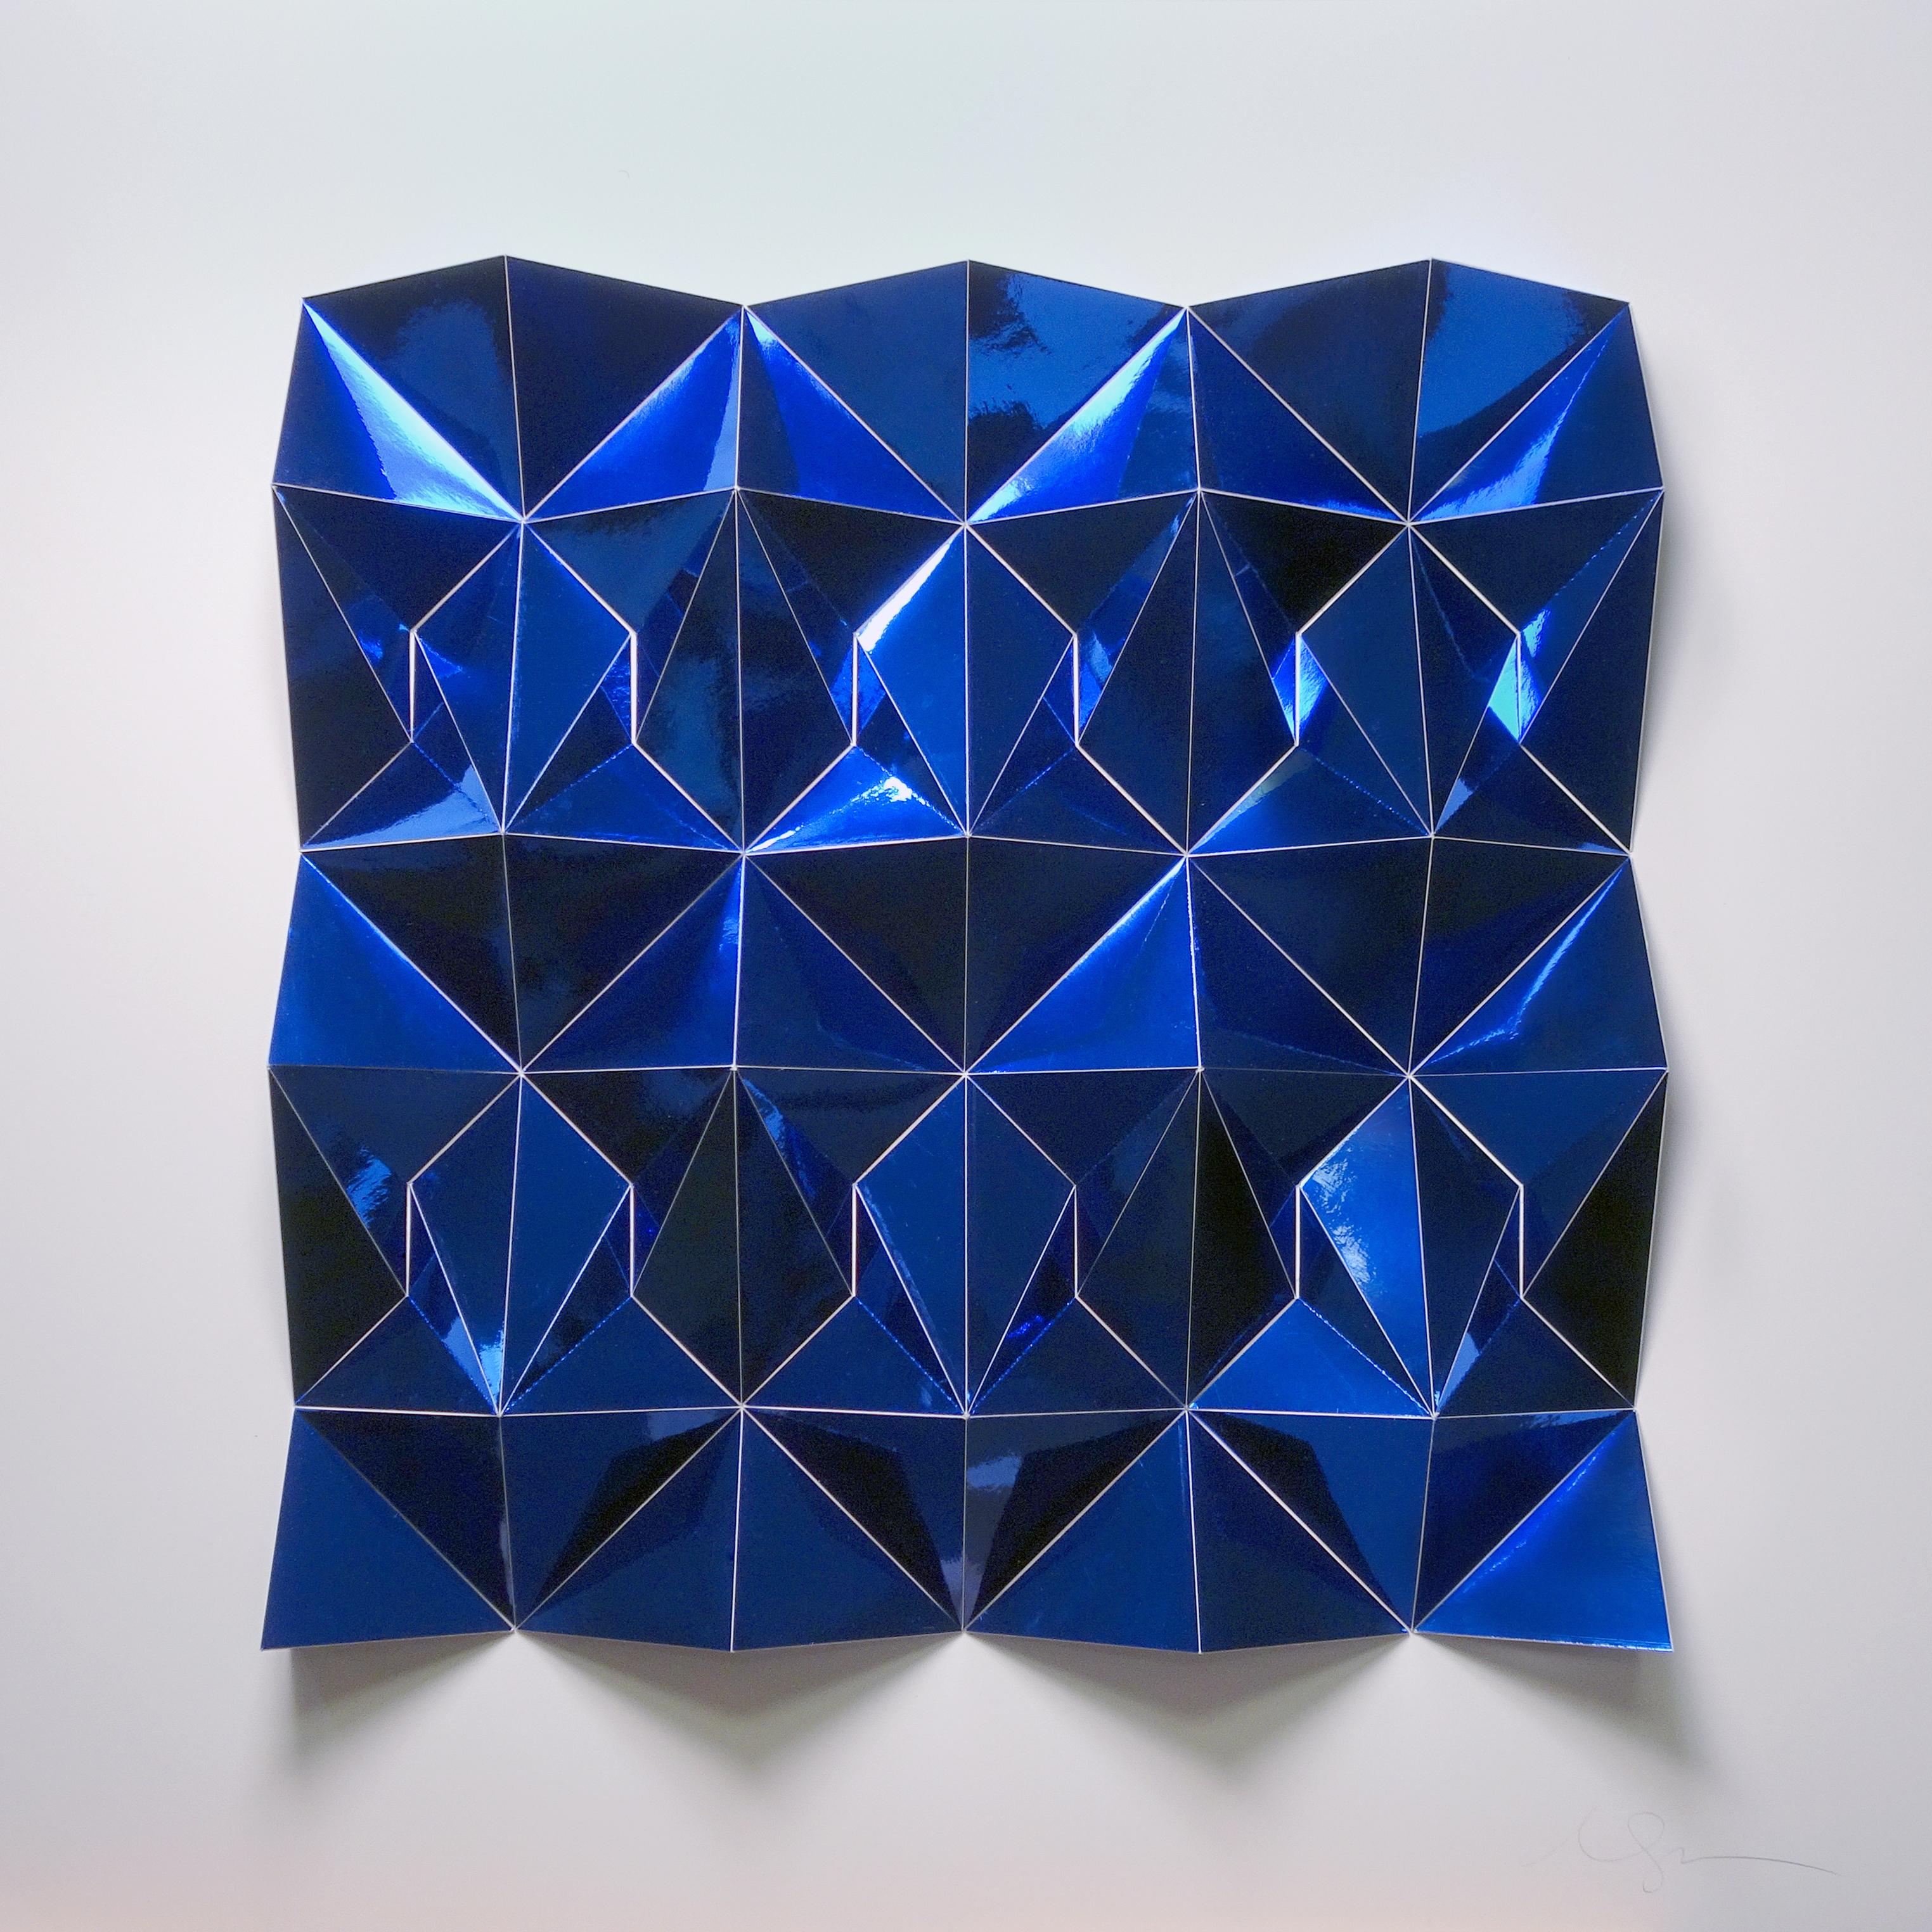 Matt Shlian Abstract Sculpture - Ara 377 in blue